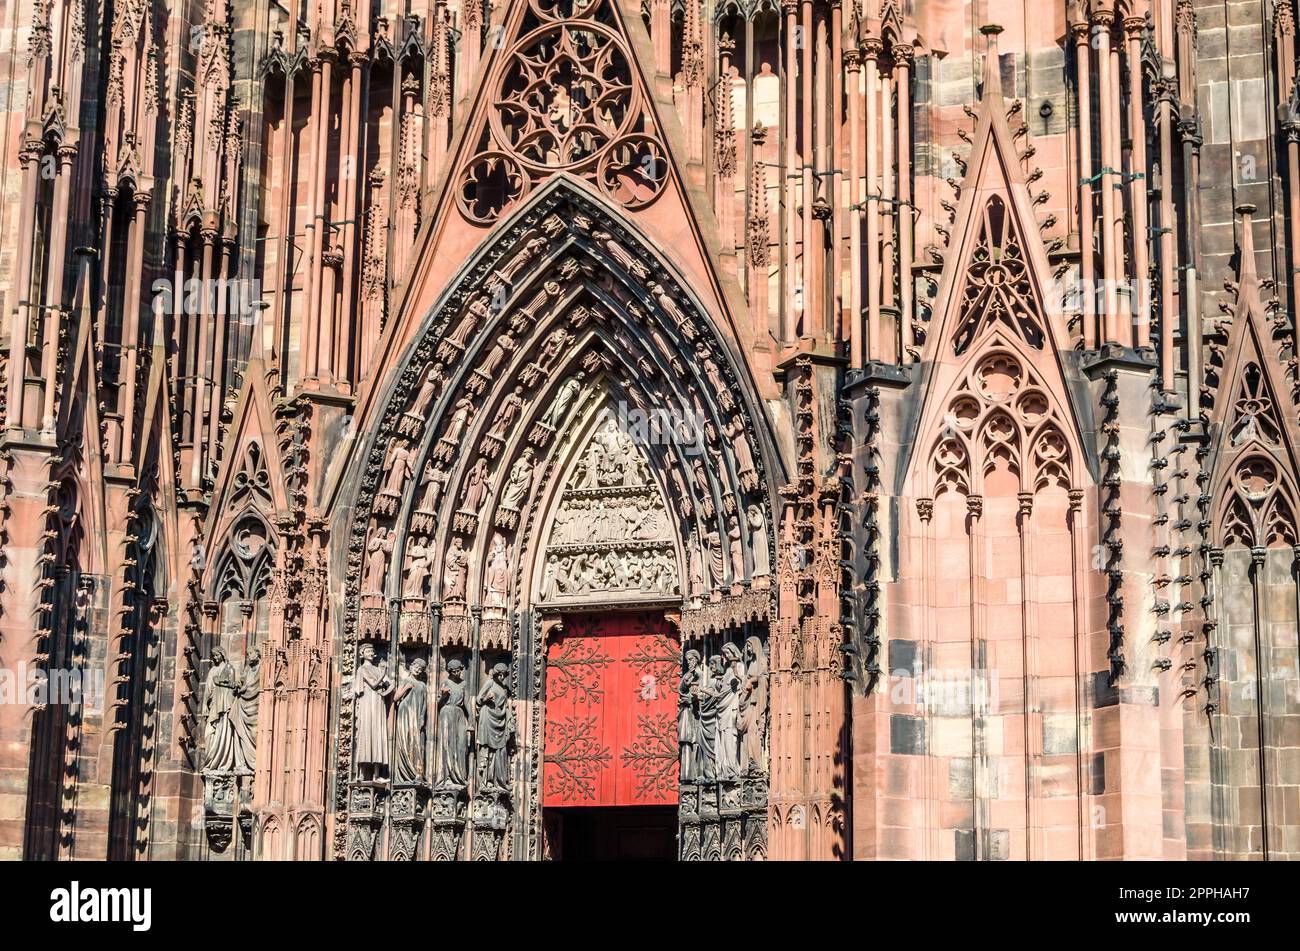 Dettaglio architettonico della cattedrale gotica di Strasburgo, Francia Foto Stock